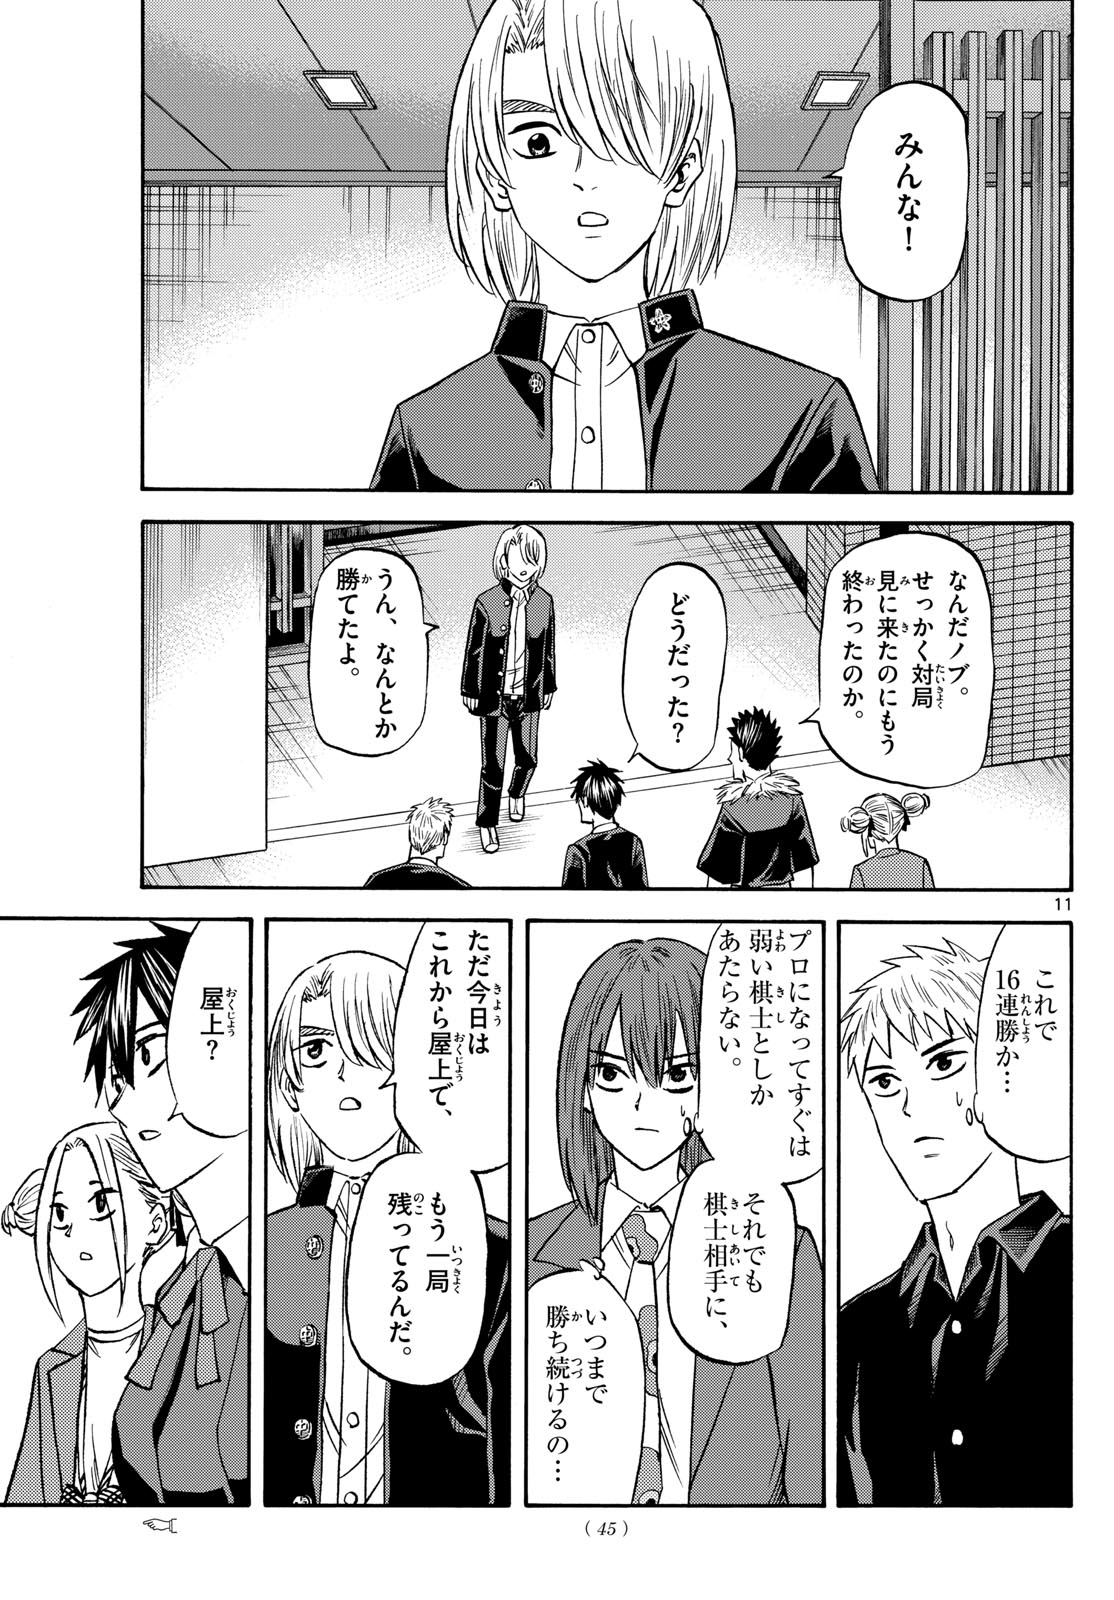 Tatsu to Ichigo - Chapter 187 - Page 11